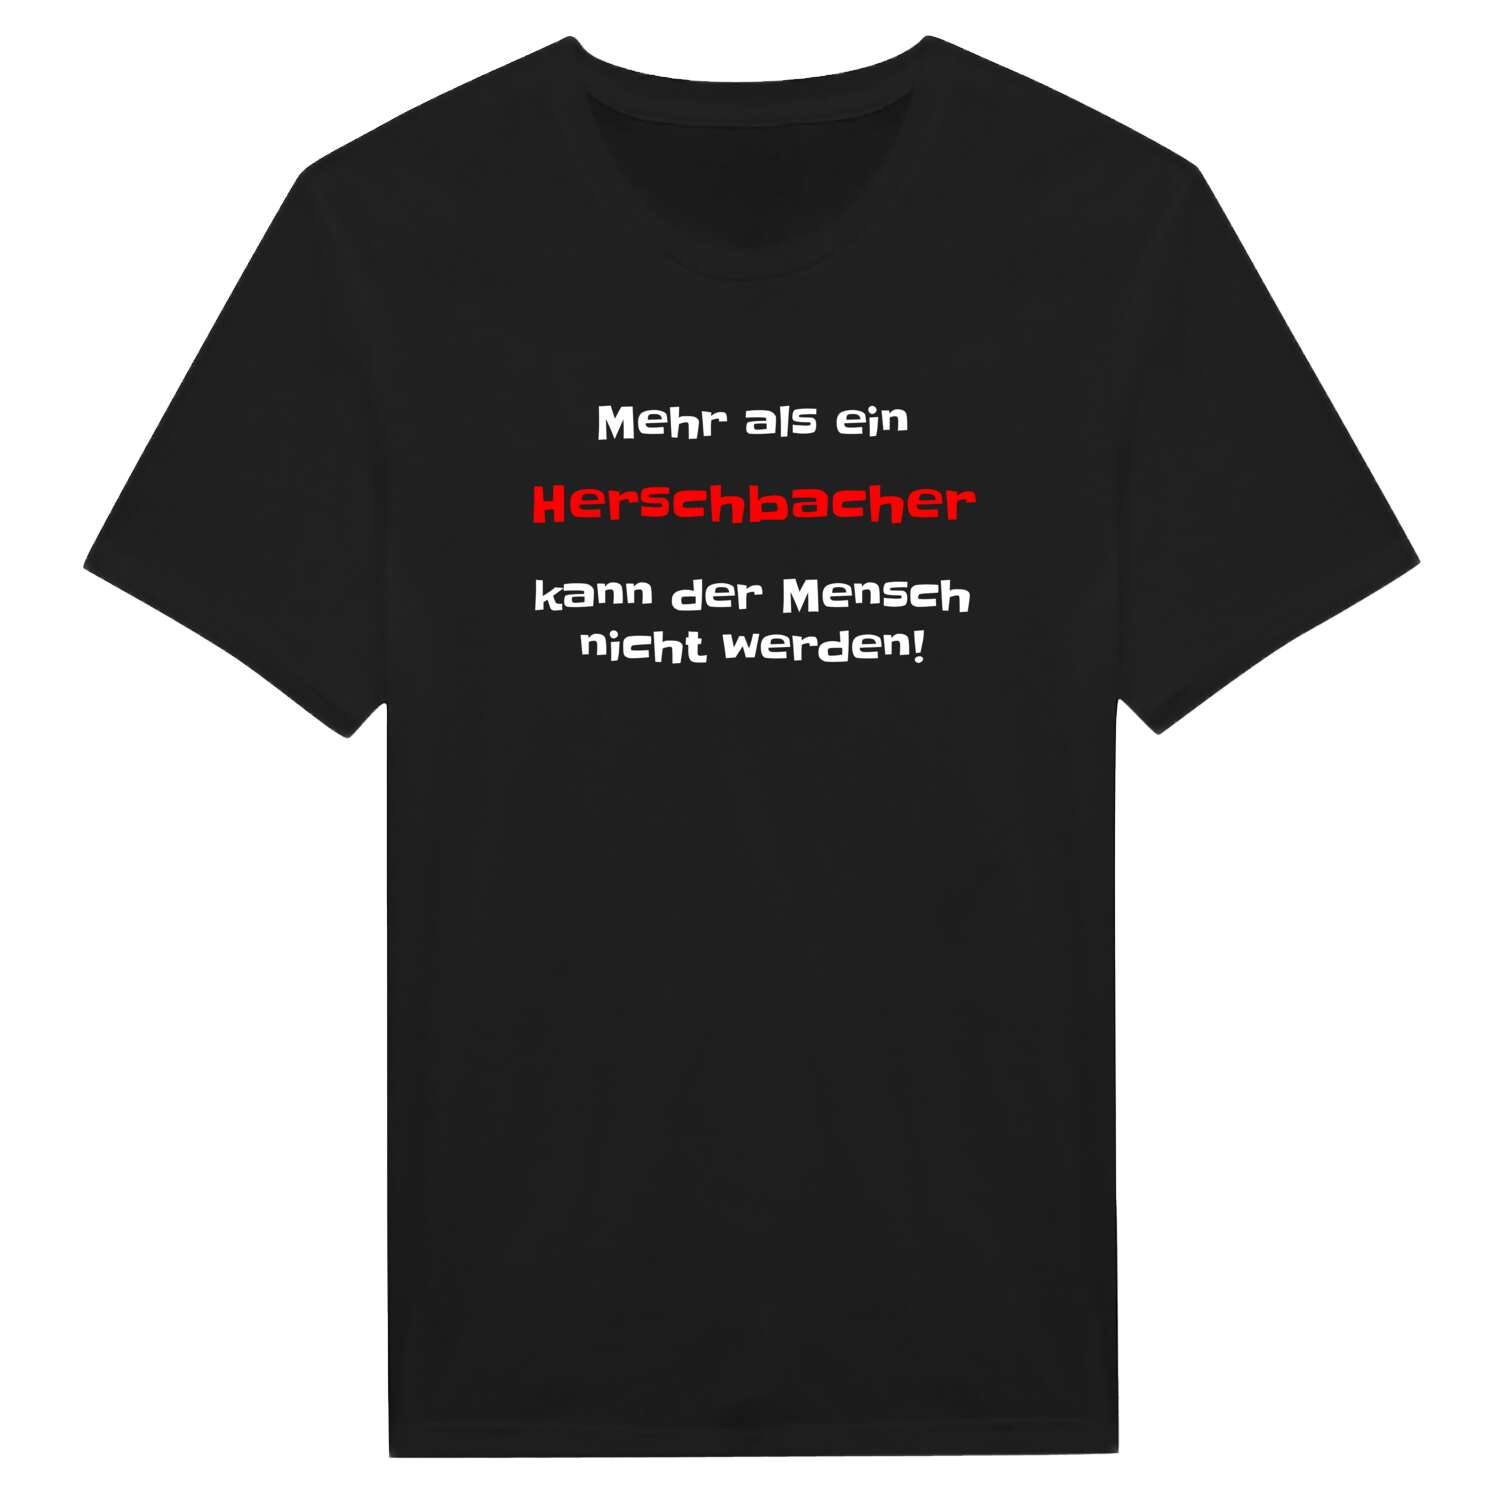 Herschbach T-Shirt »Mehr als ein«